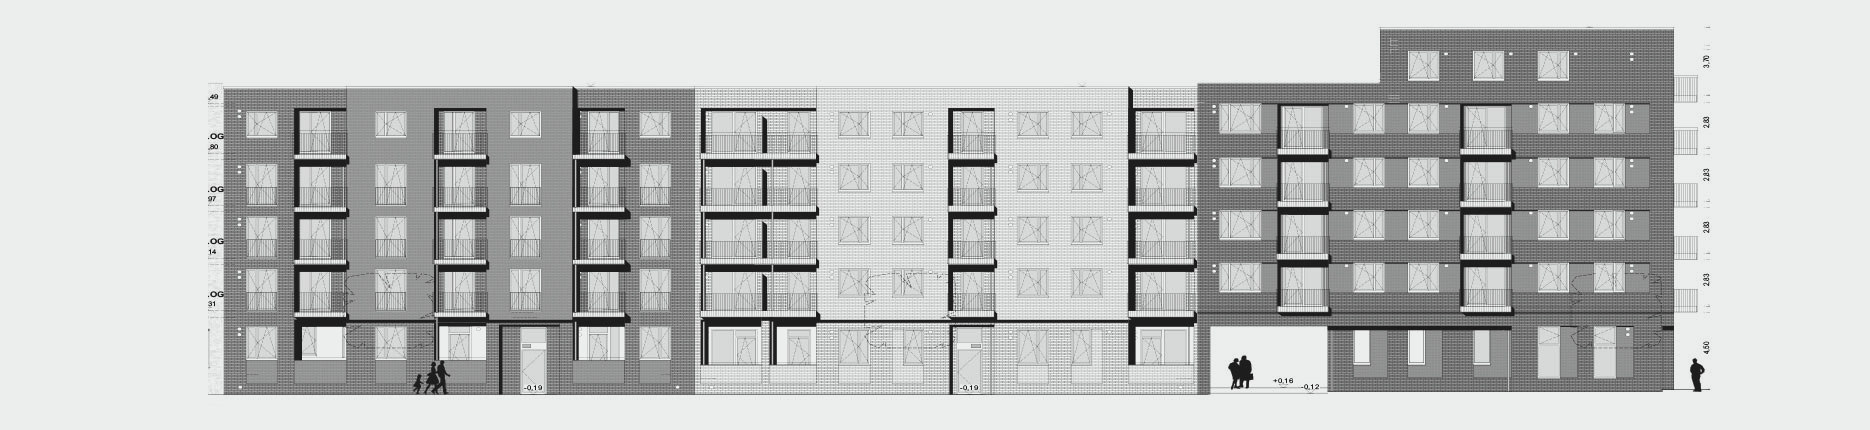 Architekturzeichnung - Diese Zeichnung zeigt ein Bauprojekt für Kapitalanleger in der Mitte Altona in Hamburg.